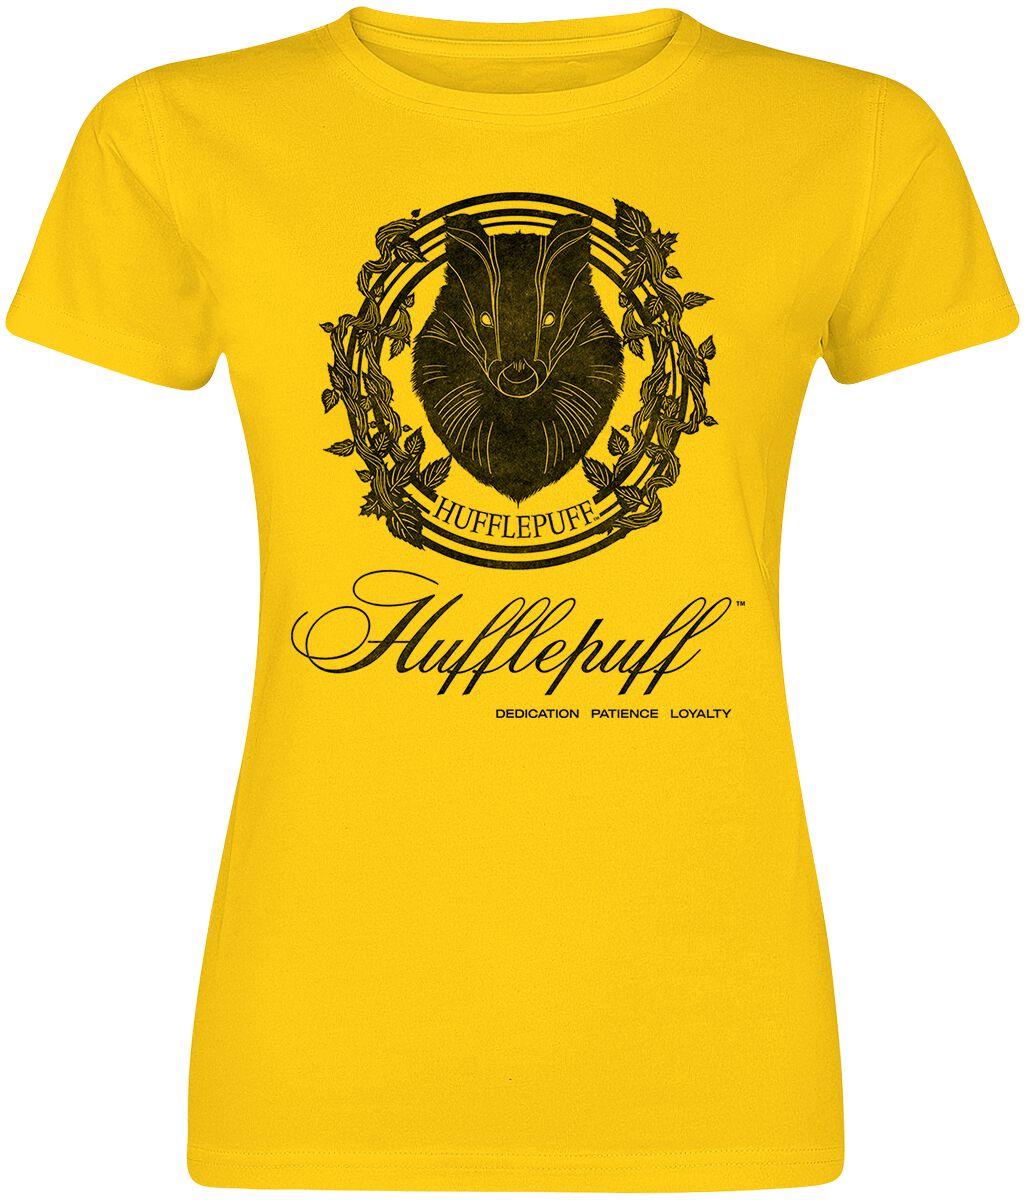 Levně Harry Potter Hufflepuff - Dedication Patience Loyalty Dámské tričko žlutá